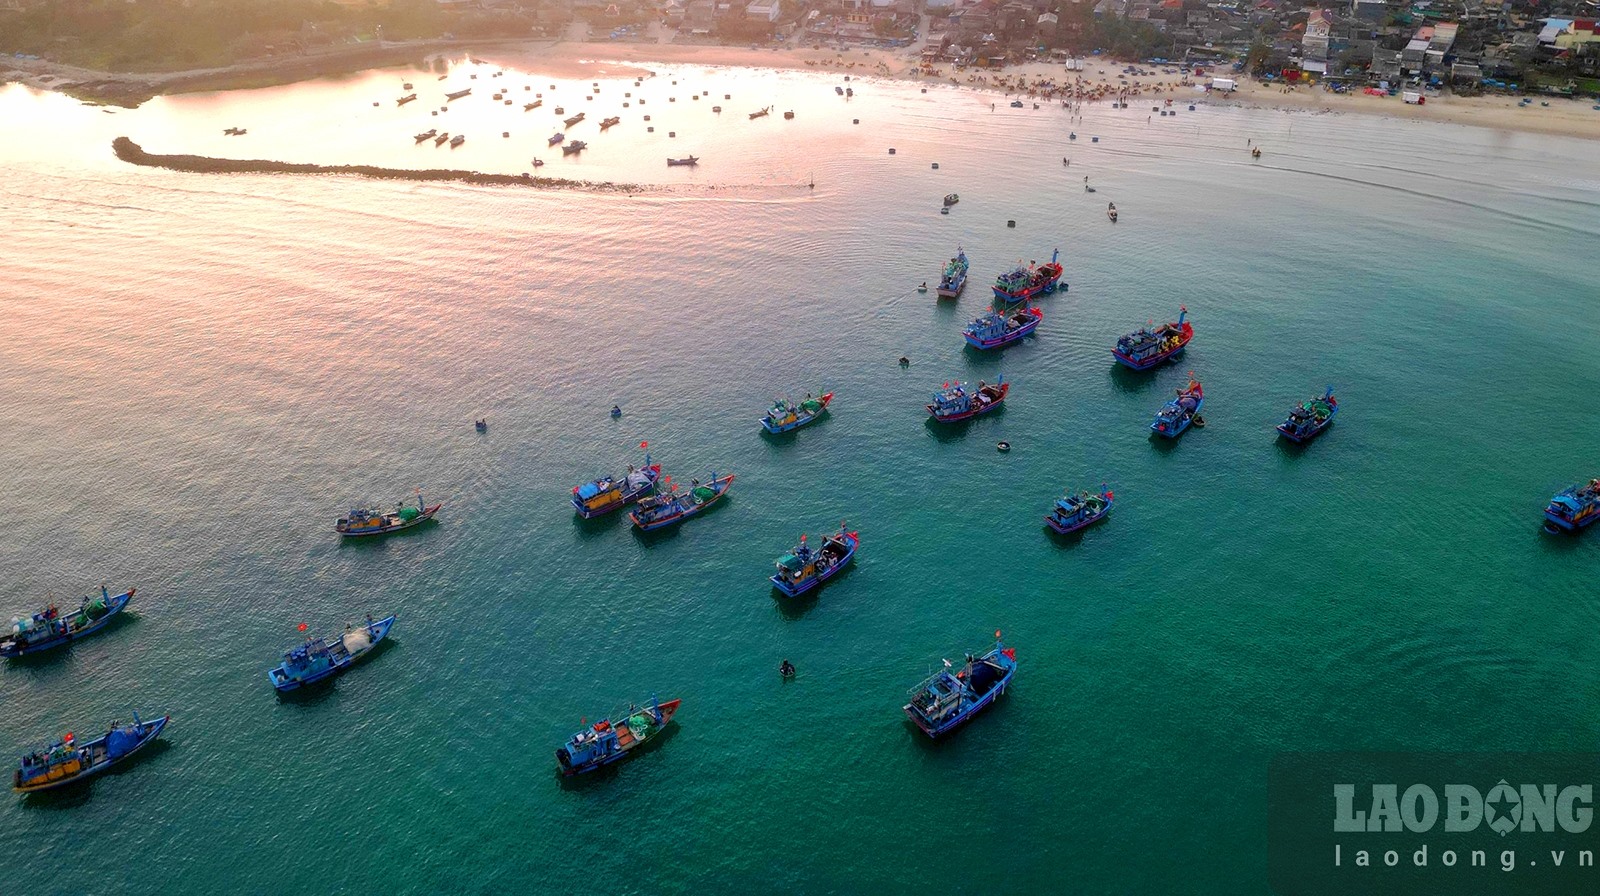 Chợ làng biển ở Quảng Ngãi, trên trời ánh bình minh, dưới tấp nập người mua bán, toàn thấy cá là cá - Ảnh 1.